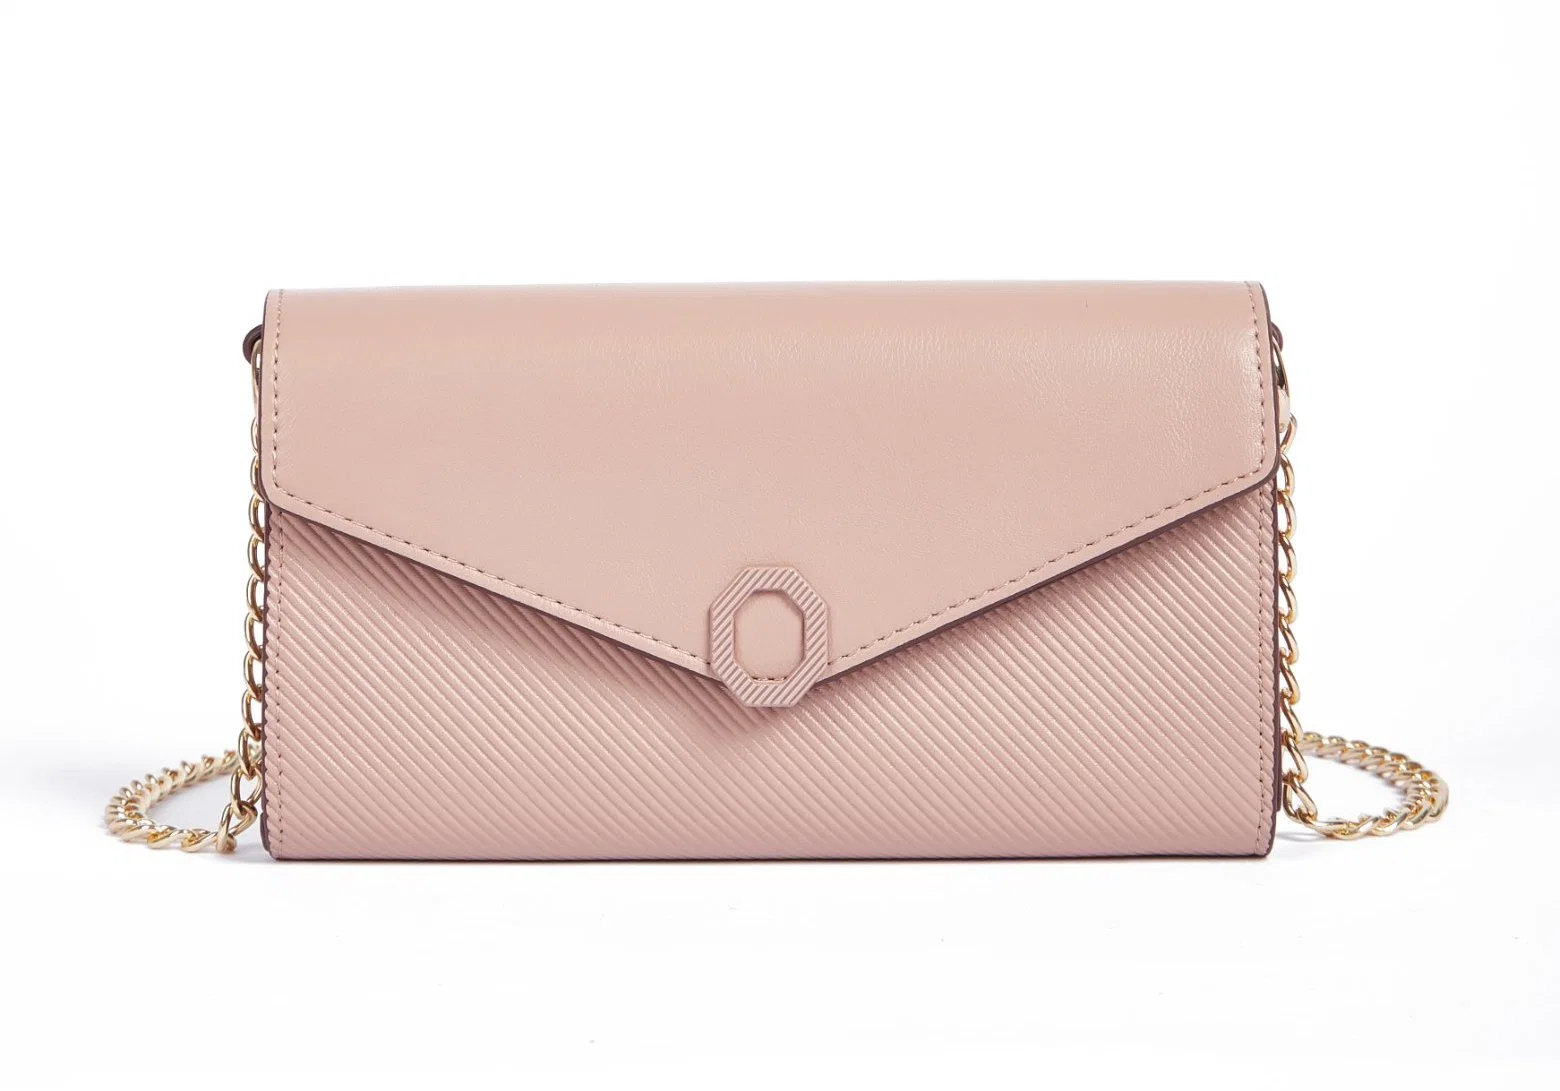 Soft Leather Long Wallet Large Capacity Wallet Shoulder Bag Pink